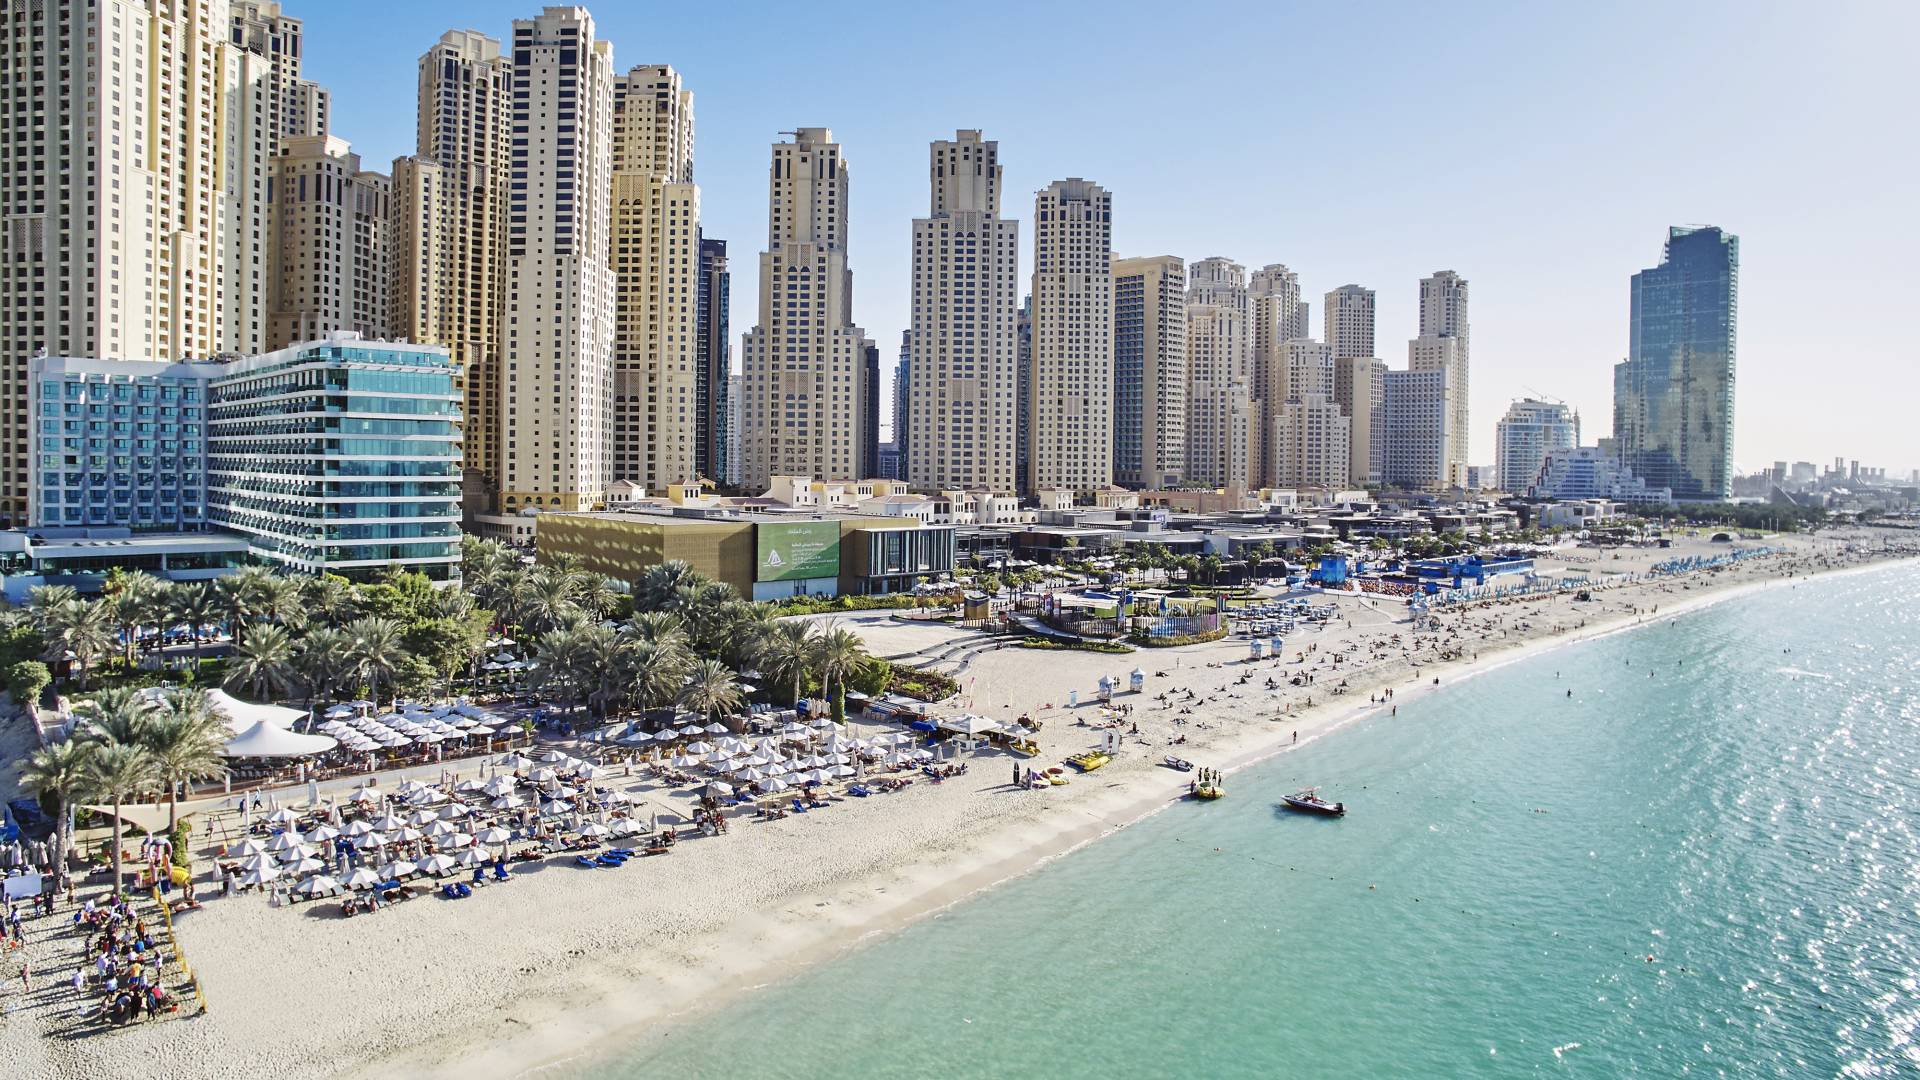 Dubai Jumeirah UAE Beach Hotel